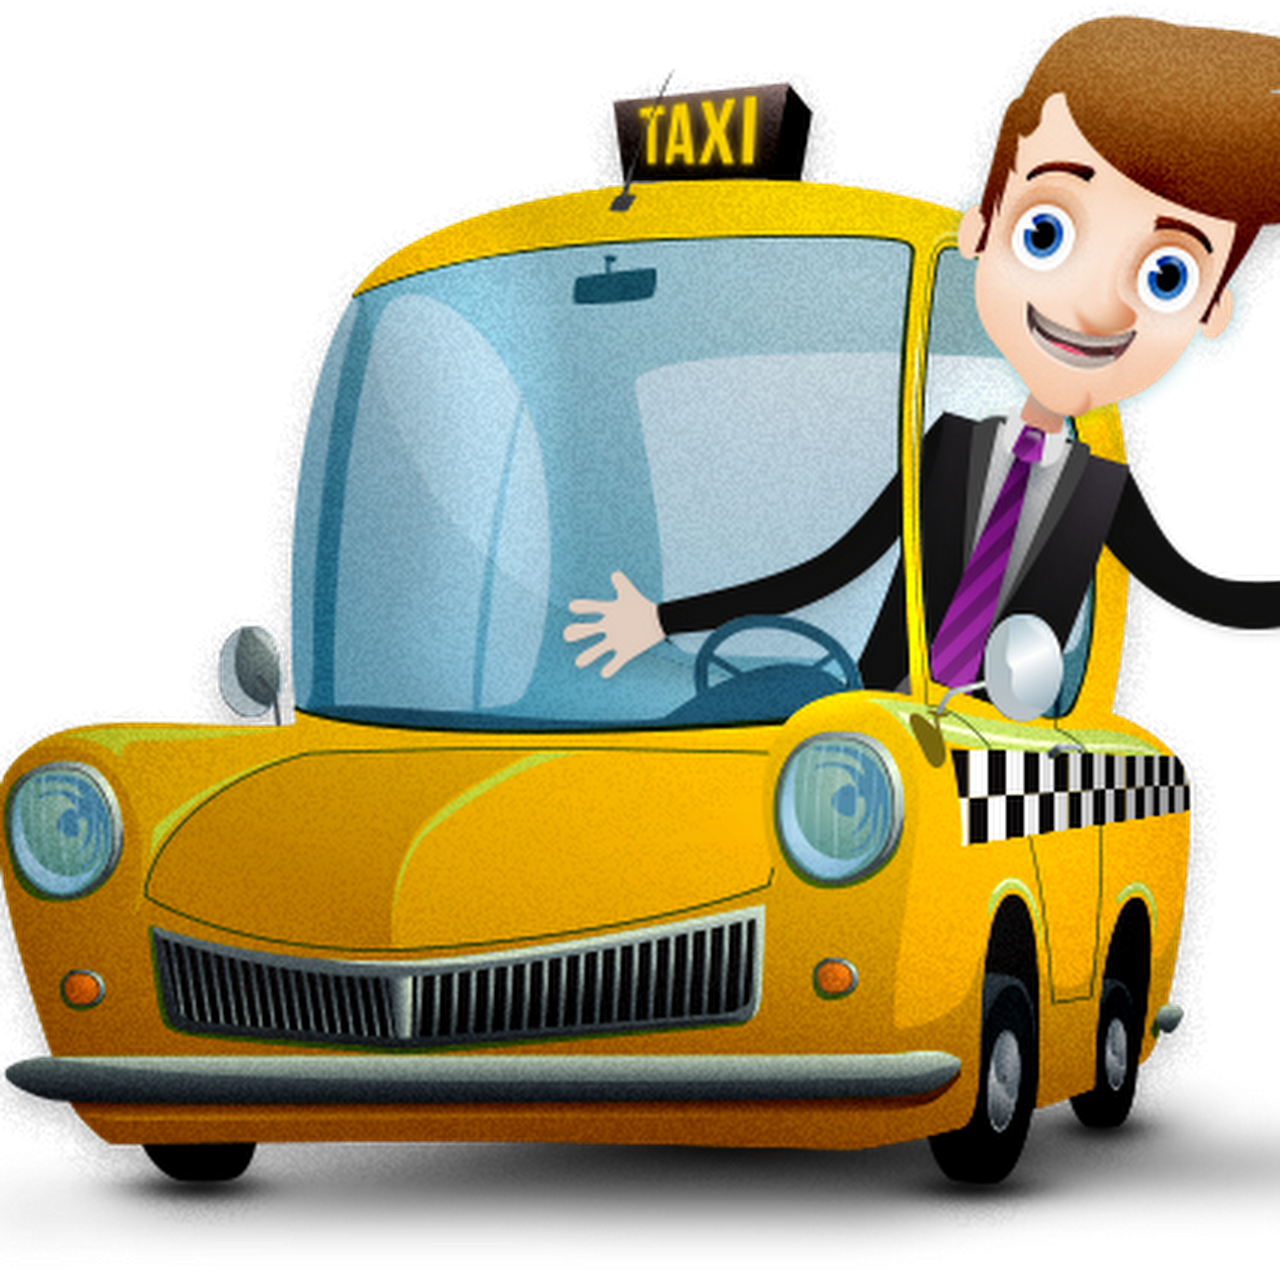 Шофер для детей. Мультяшная машинка такси. Шофер мультяшный. Профессия таксист для детей.